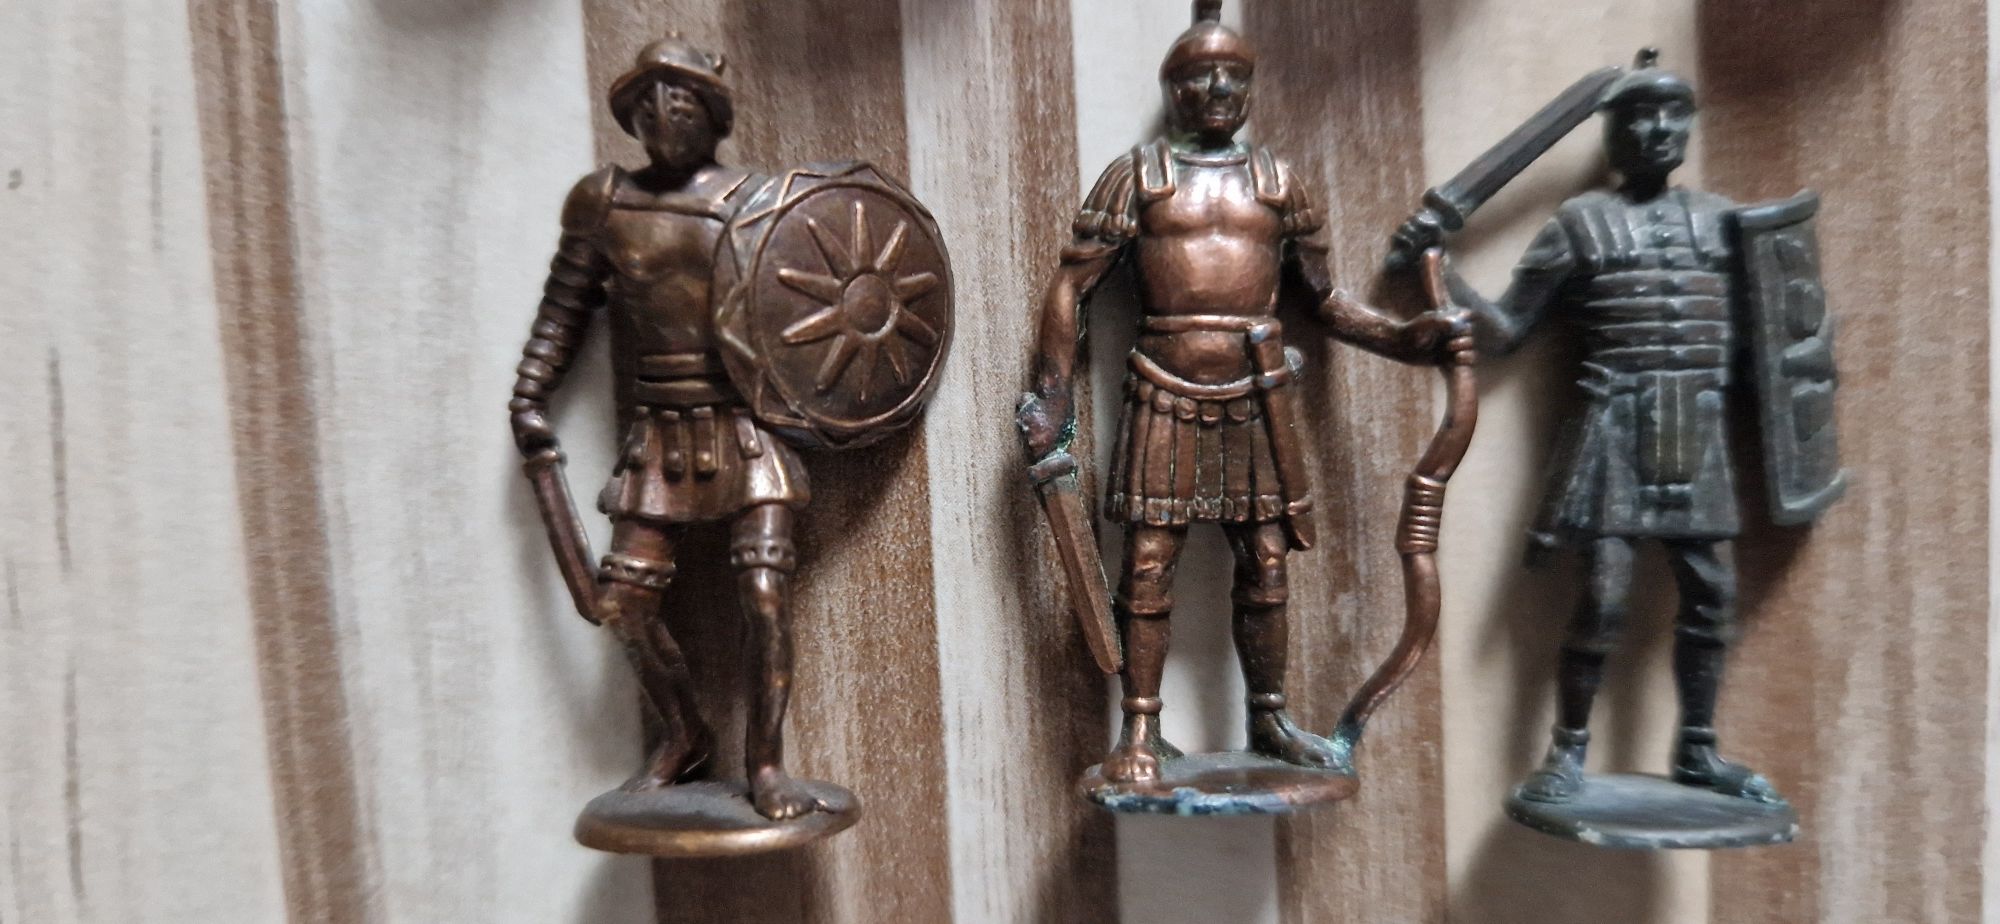 Rzymianie figurki metalowe z kinder niespodzianka